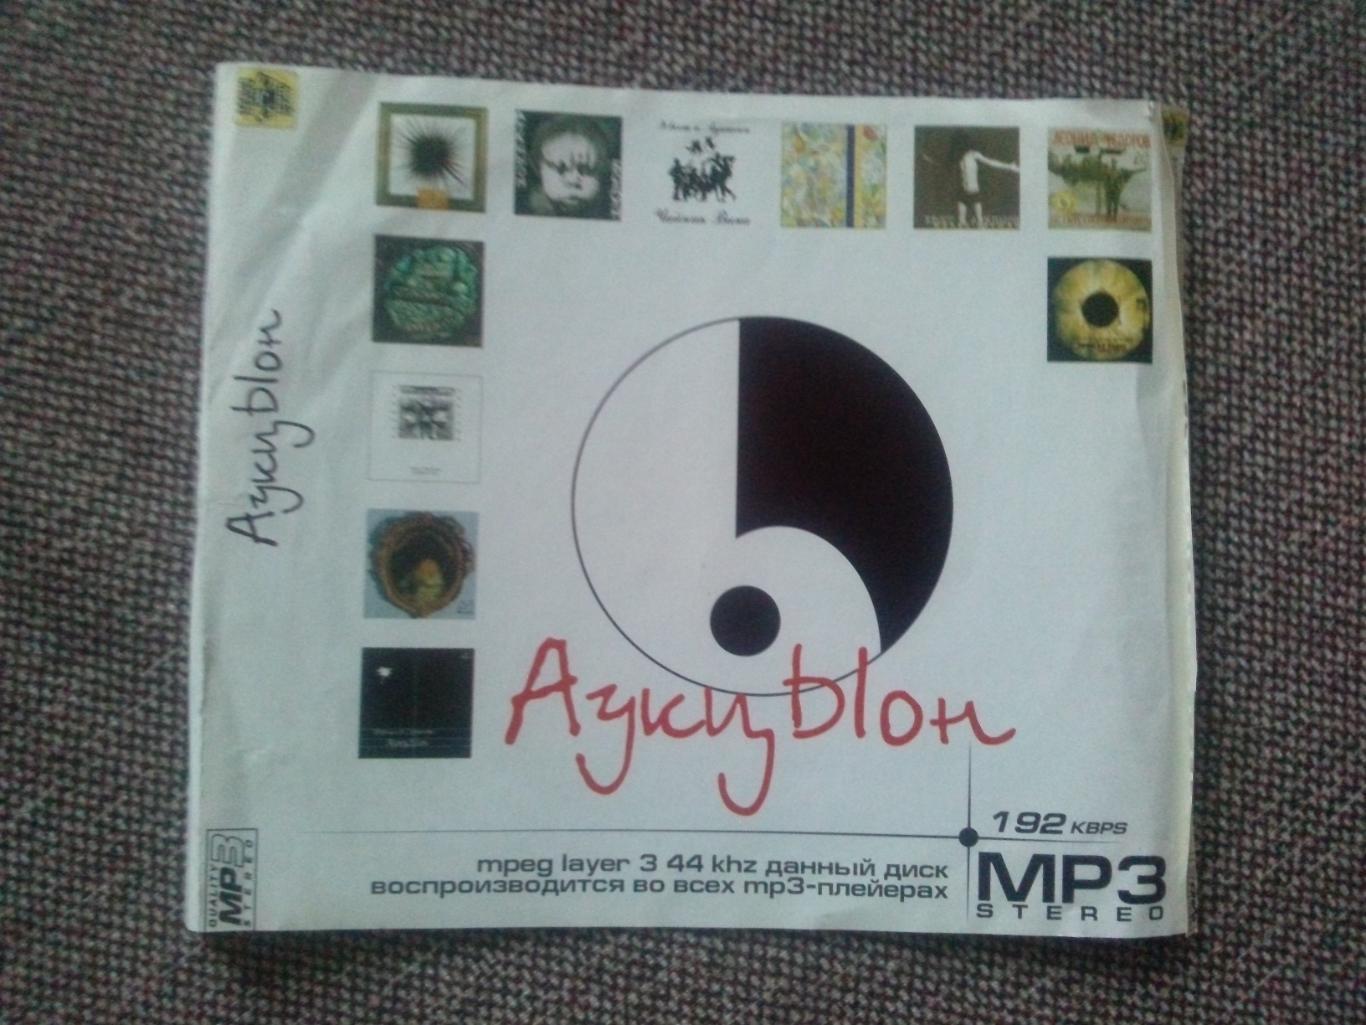 MP - 3 CD диск : группаАукцыон1986 - 2000 гг. 11 альбомов (Русский рок) 5